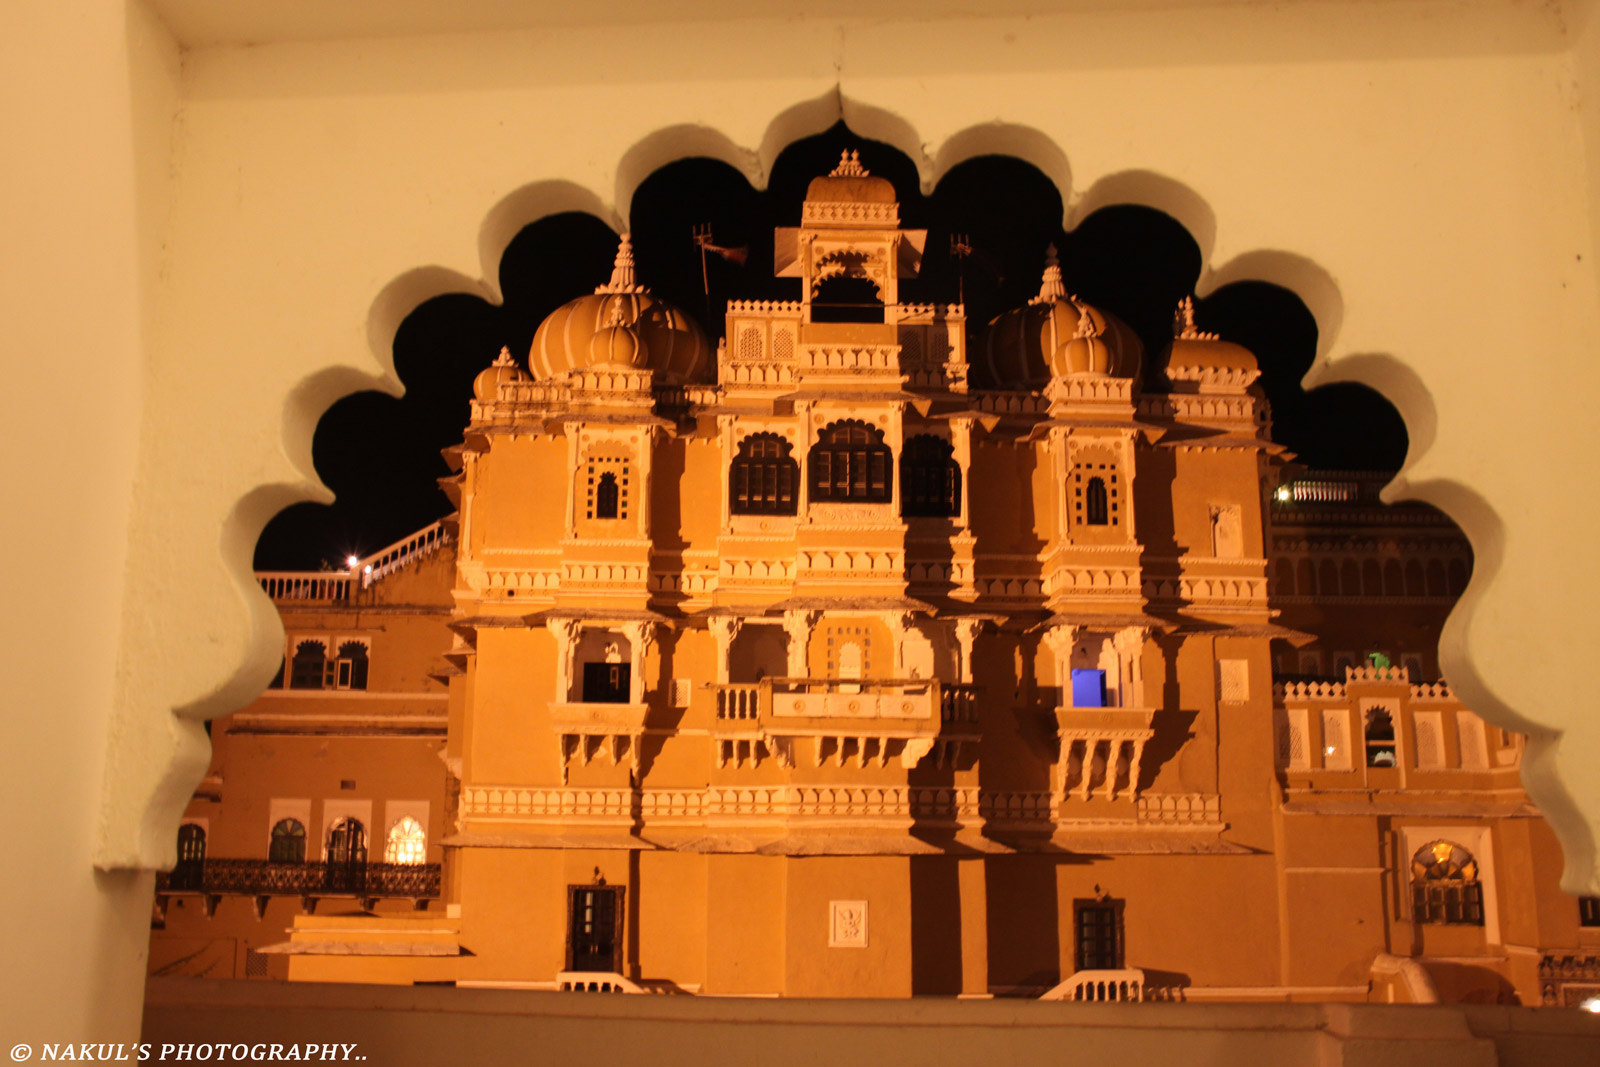 Rajasthan palace, India